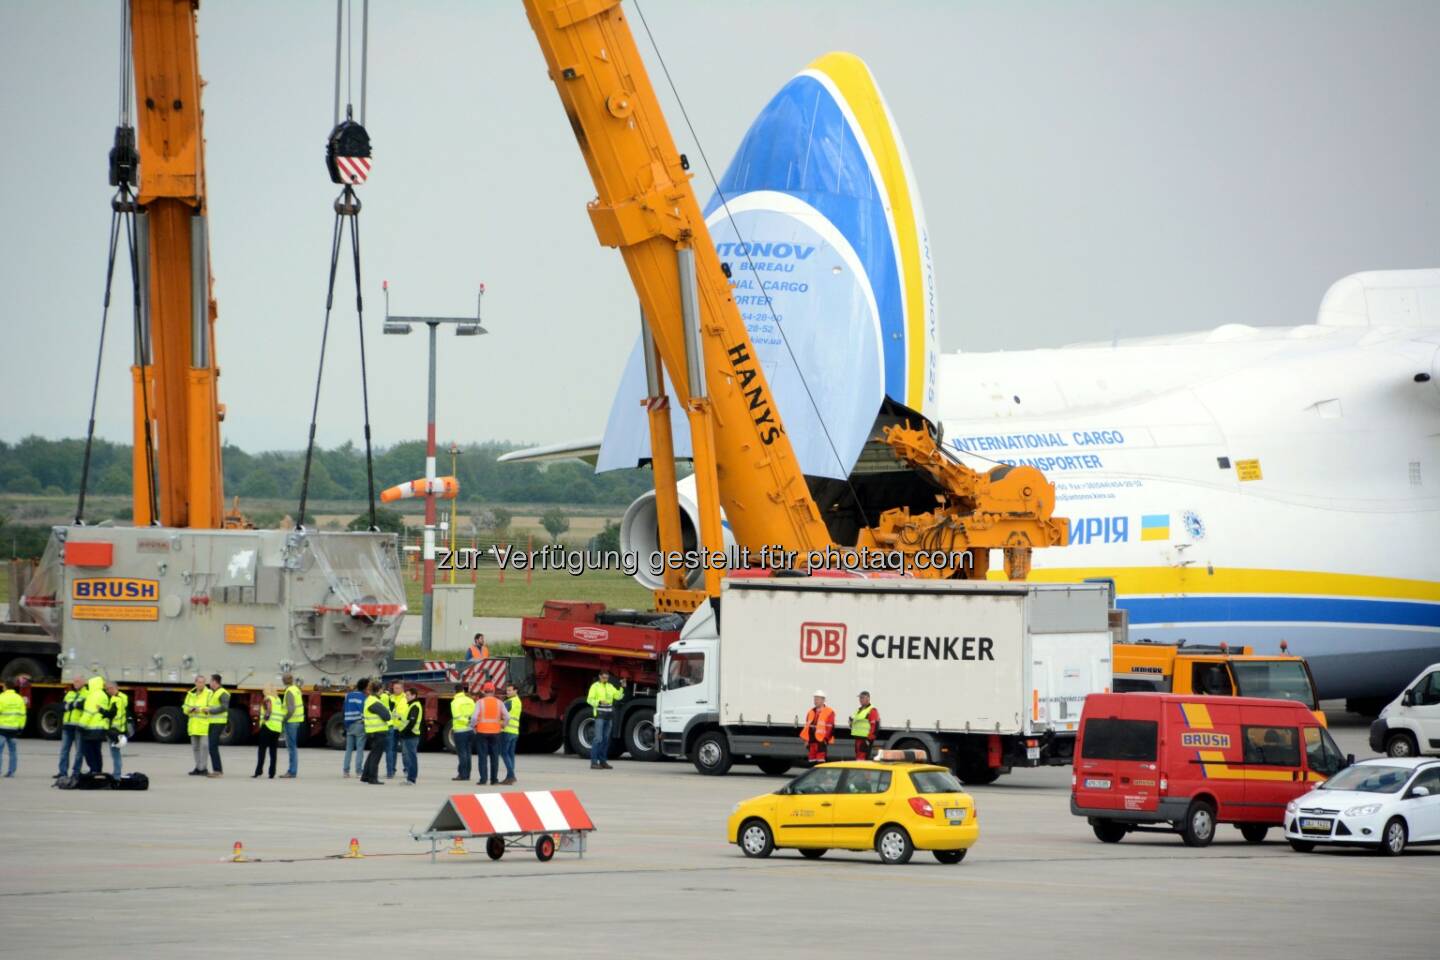 Antonow-225 Mryia, Verladung in Prag : Größtes Flugzeug der Welt mit 117 Tonnen-Generator erstmals in Australien - DB Schenker bringt XXL-Ladung von Prag nach Perth : Fotocredit: DB Schenker